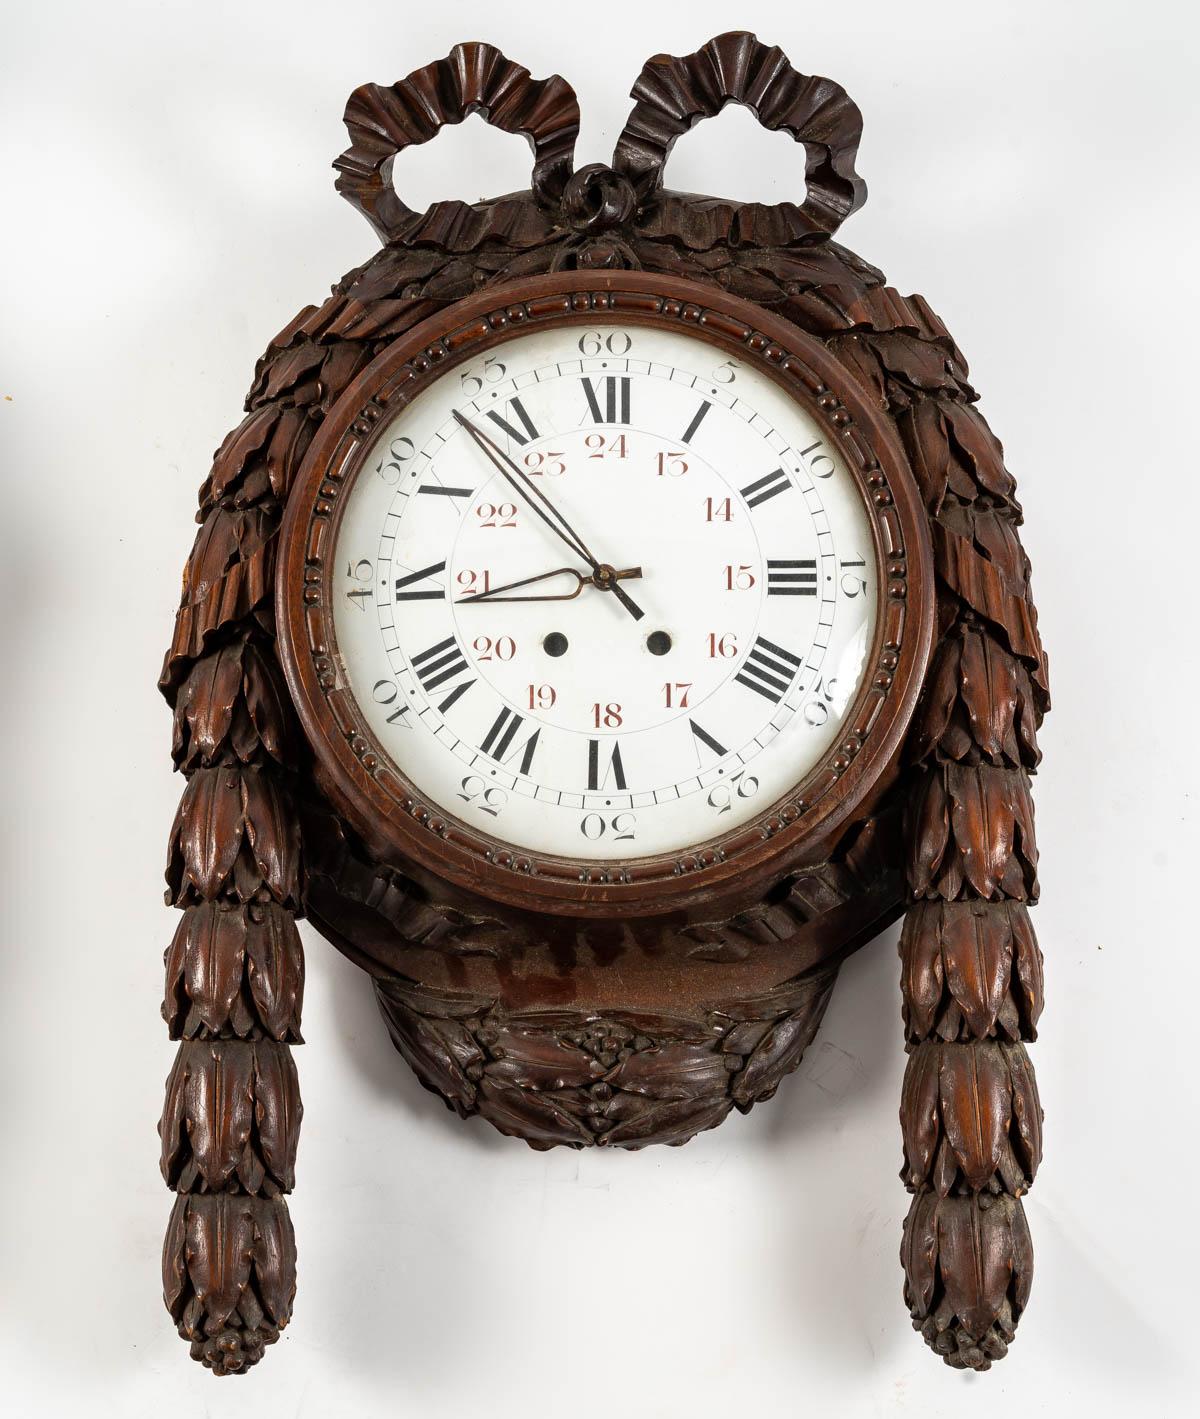 Ensemble d'un baromètre et d'une horloge, 19e siècle
Ensemble d'un baromètre et d'une horloge en bois sculpté, du 19e siècle, style Louis XVI, époque Napoléon III, grande décoration.
Le mécanisme de l'horloge est manquant, mais il est possible,